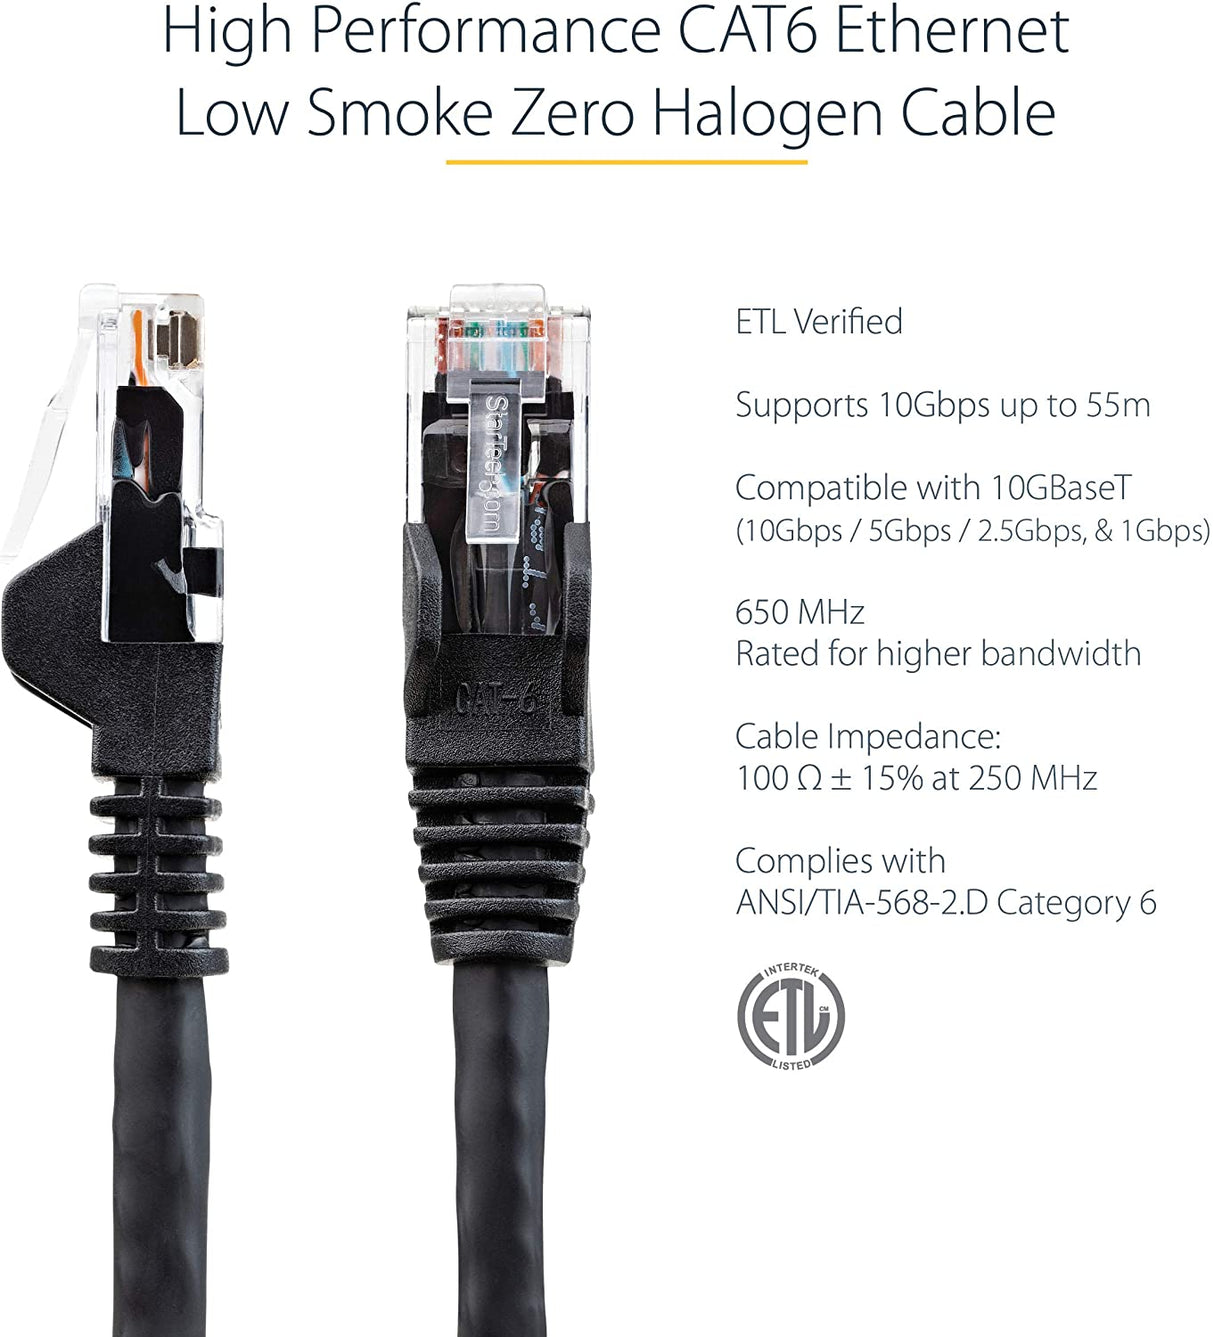 Startech 6ft (1.8m) CAT6 Ethernet Cable - LSZH (Low Smoke Zero Halogen) - 10 Gigabit 650MHz 100W PoE RJ45 UTP Network Patch Cord Snagless w/Strain Relief - Black CAT 6, ETL Verified (N6LPATCH6BK) 6 ft Black